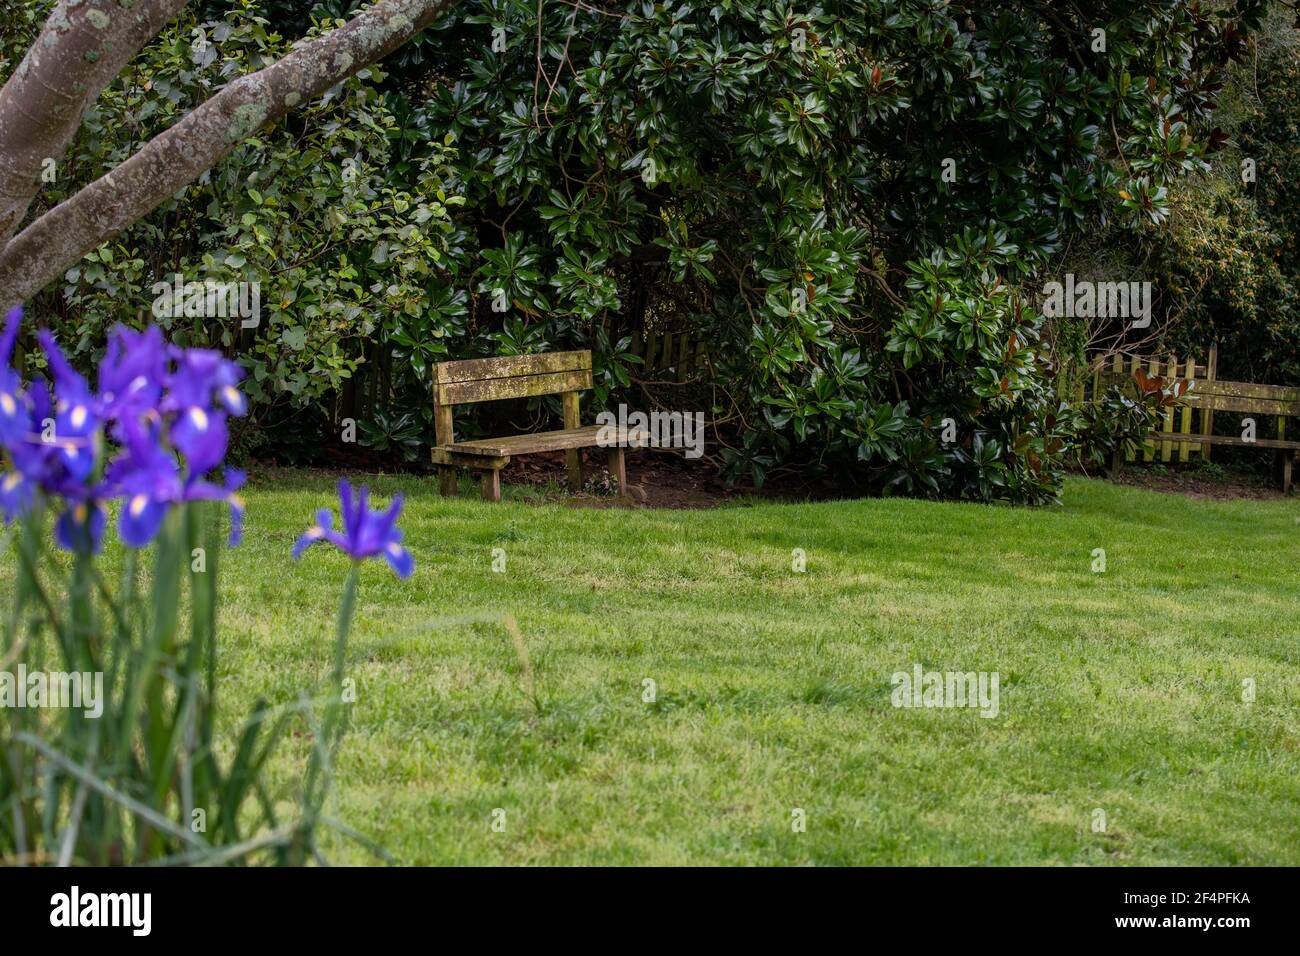 Ancien banc dans un jardin avec pelouse verte et bleu fleurs d'iris Banque D'Images